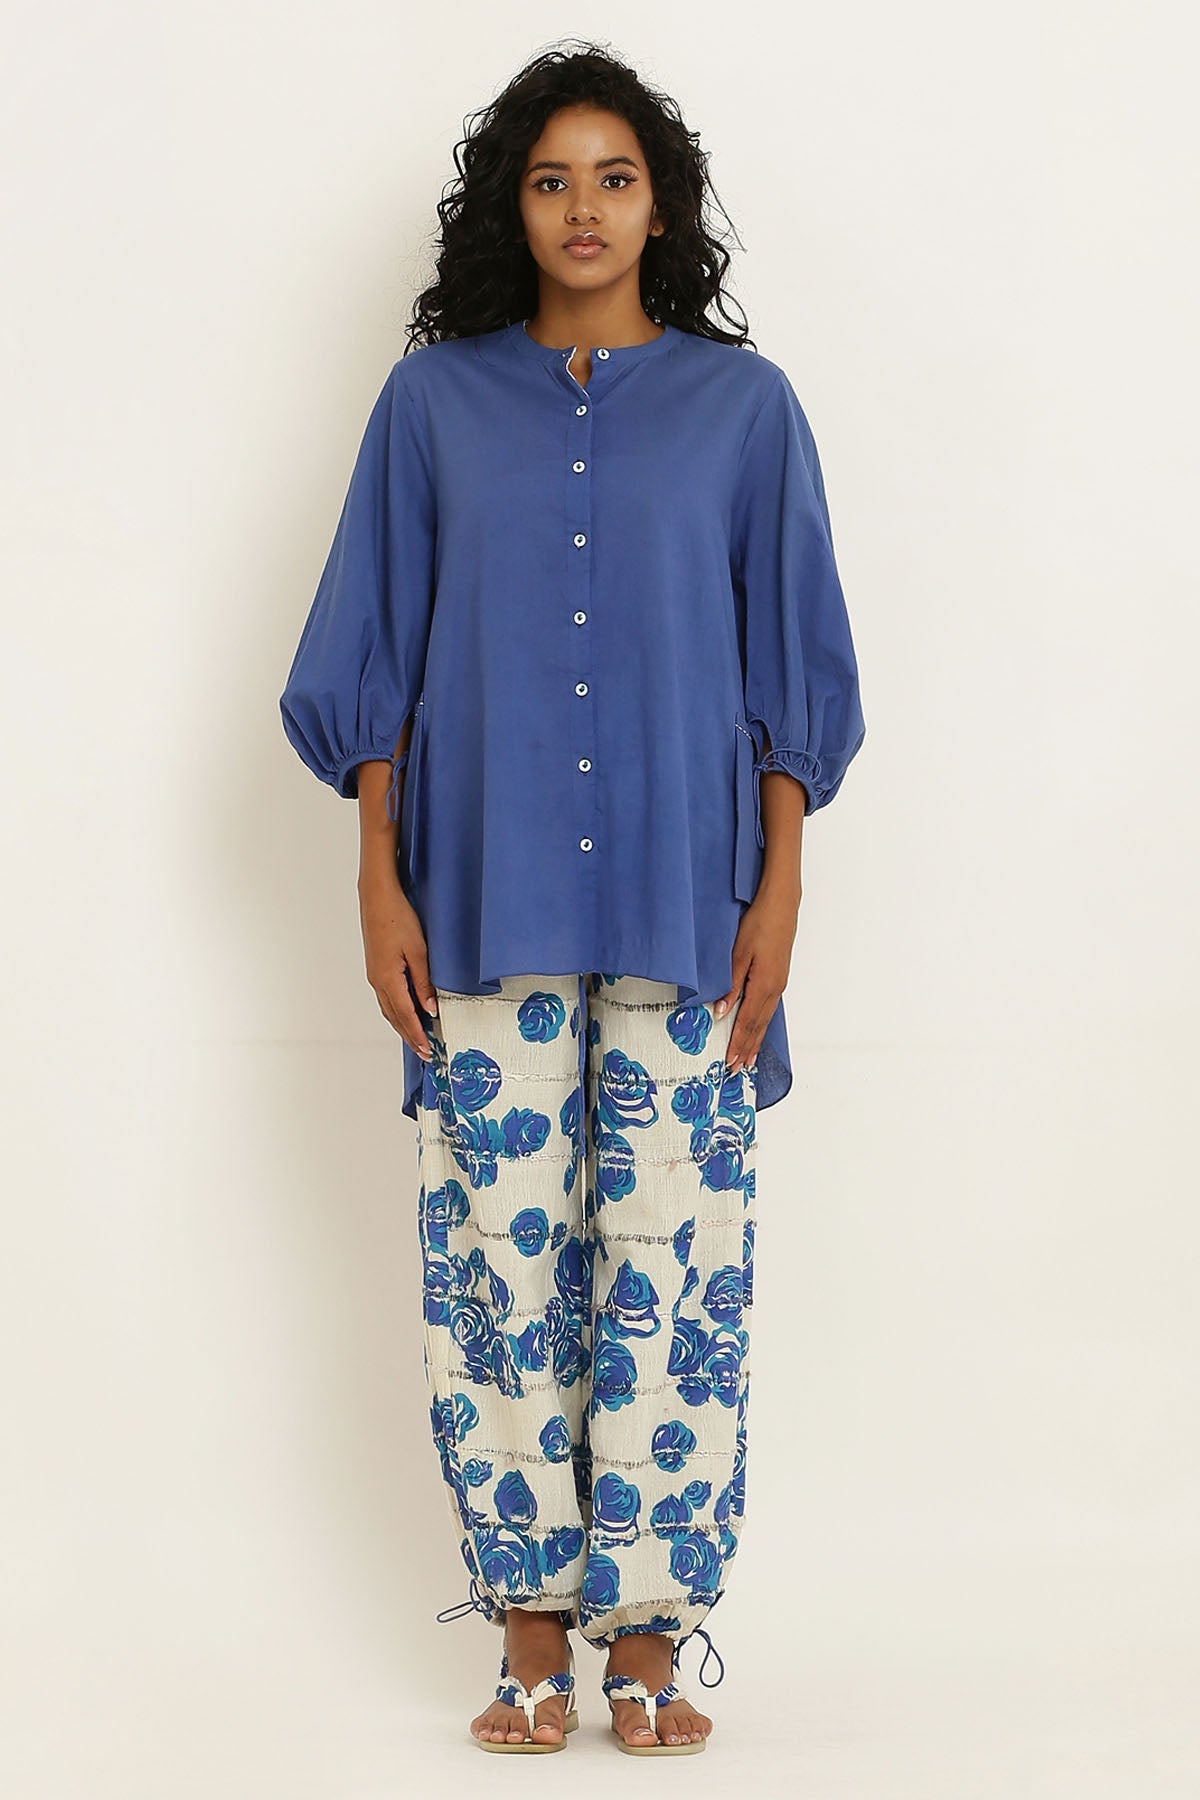 Designer Kusmi Effortless Elegance with a Twist: Blue Floral Co-ord For Women at ScrollnShops